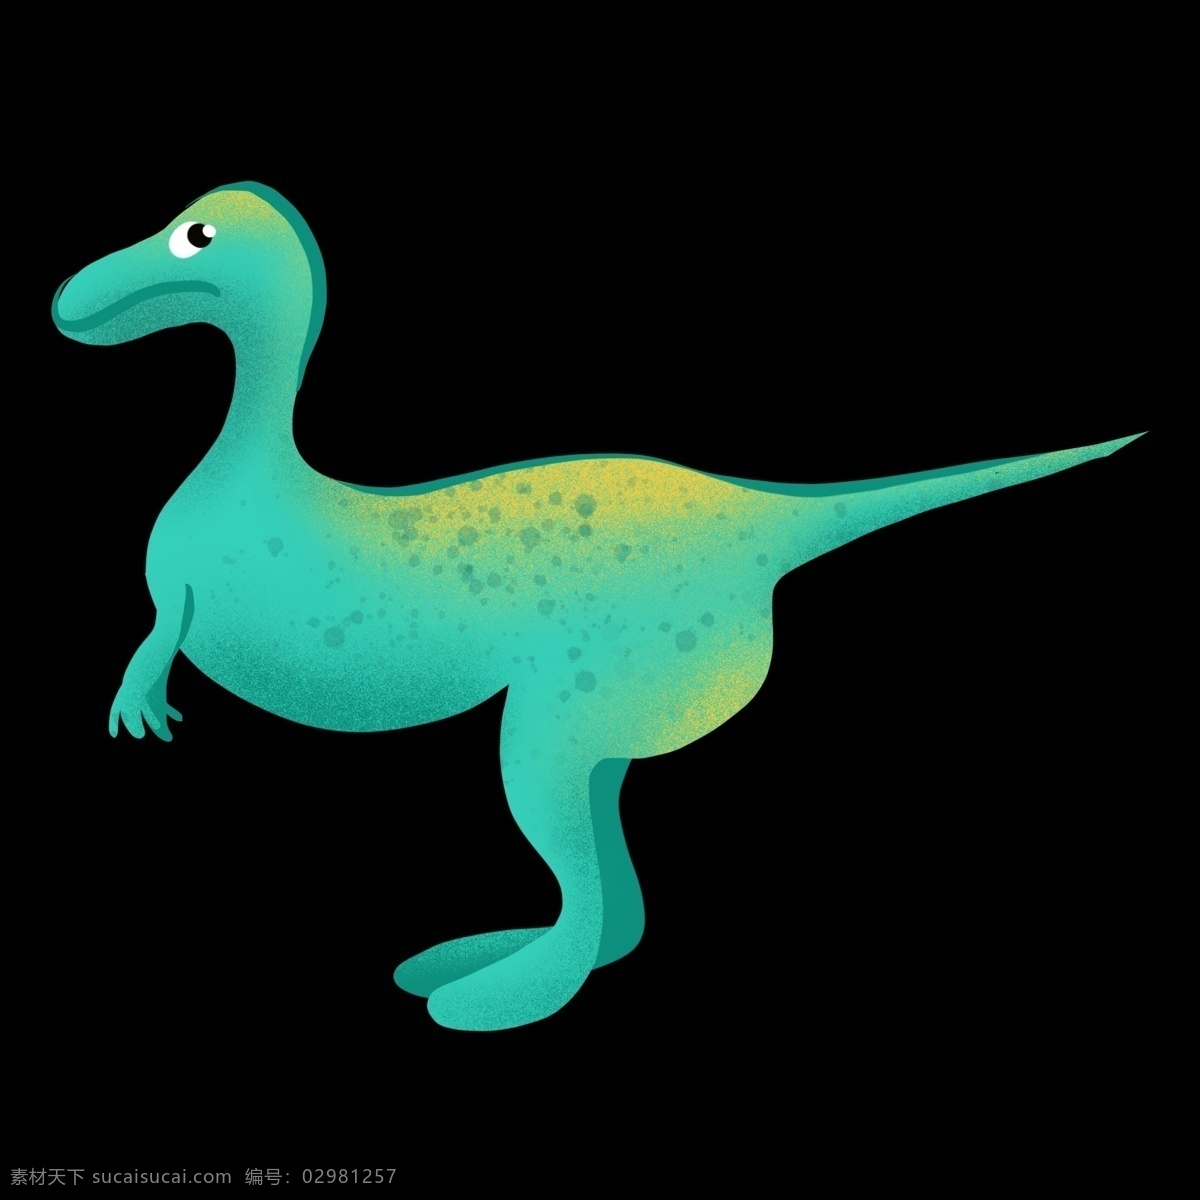 可爱 蓝色 恐龙 插图 卡通恐龙 可爱的恐龙 蓝色恐龙插图 动物 珍惜动物 蓝色玩具恐龙